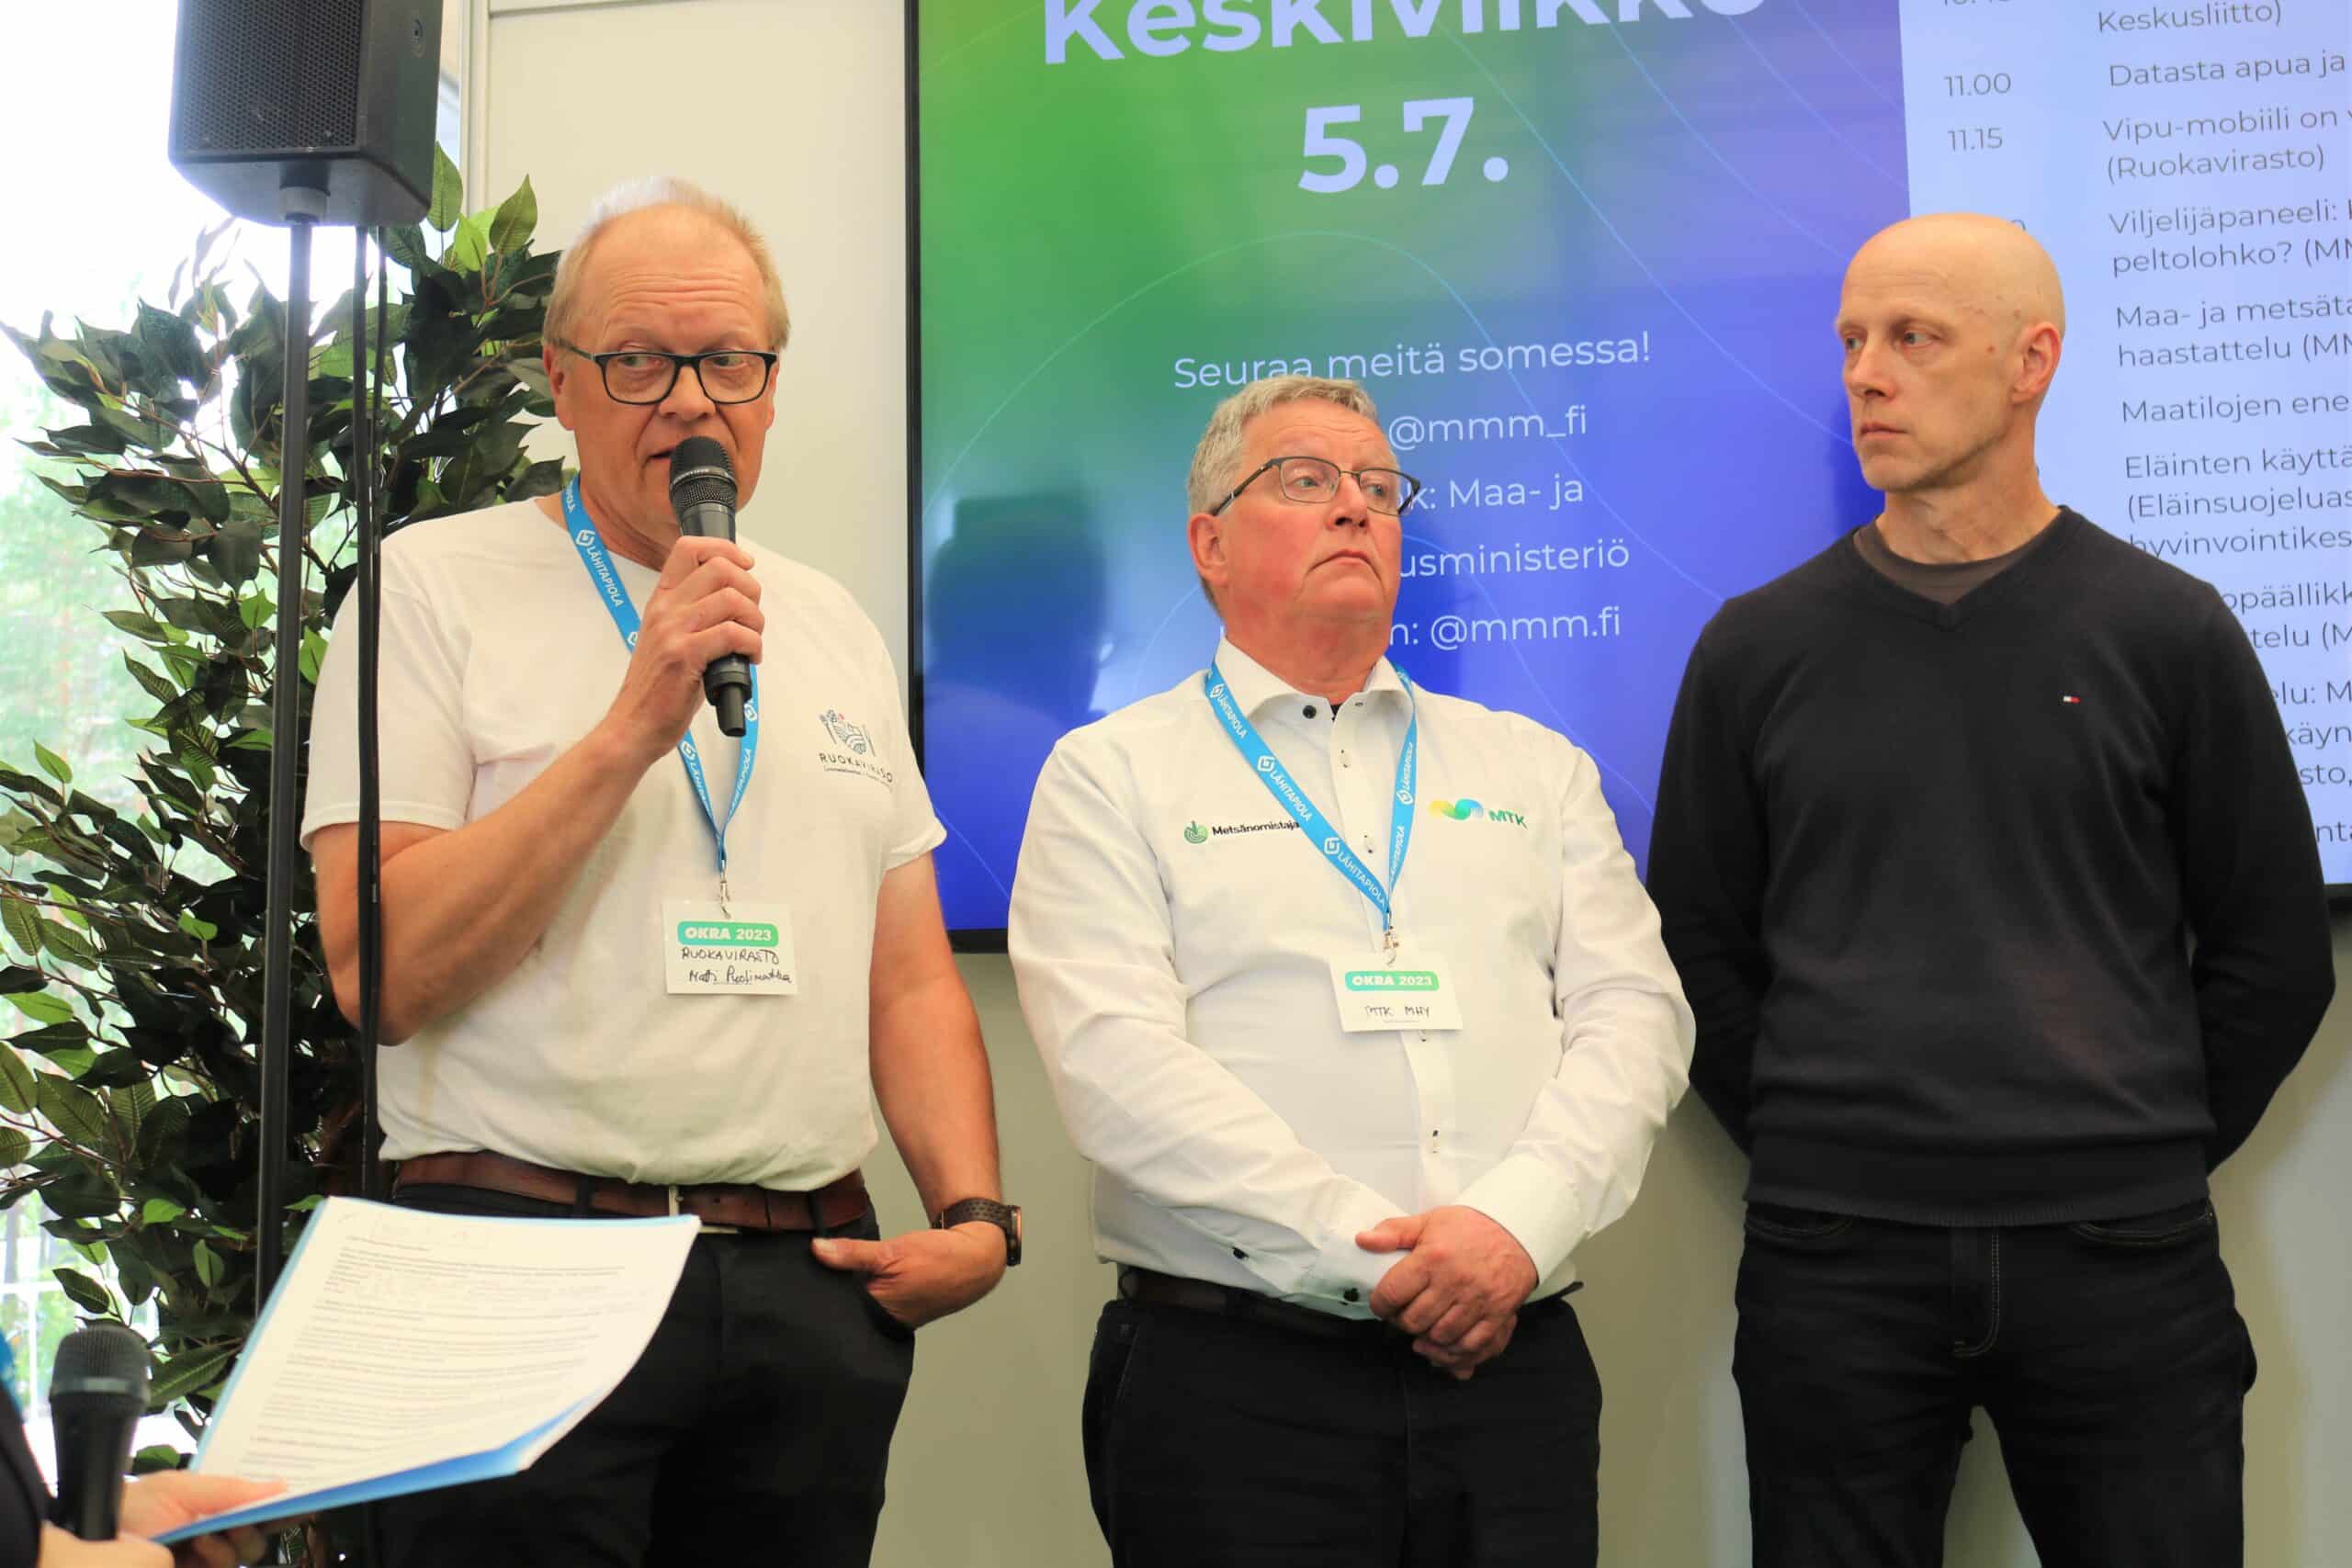 Kolme ihmistä lavalla. Vasemmalla mikrofonin kanssa Matti Puolimatka, keskellä Paavo Myllymäki ja oikealla Markku Paija.